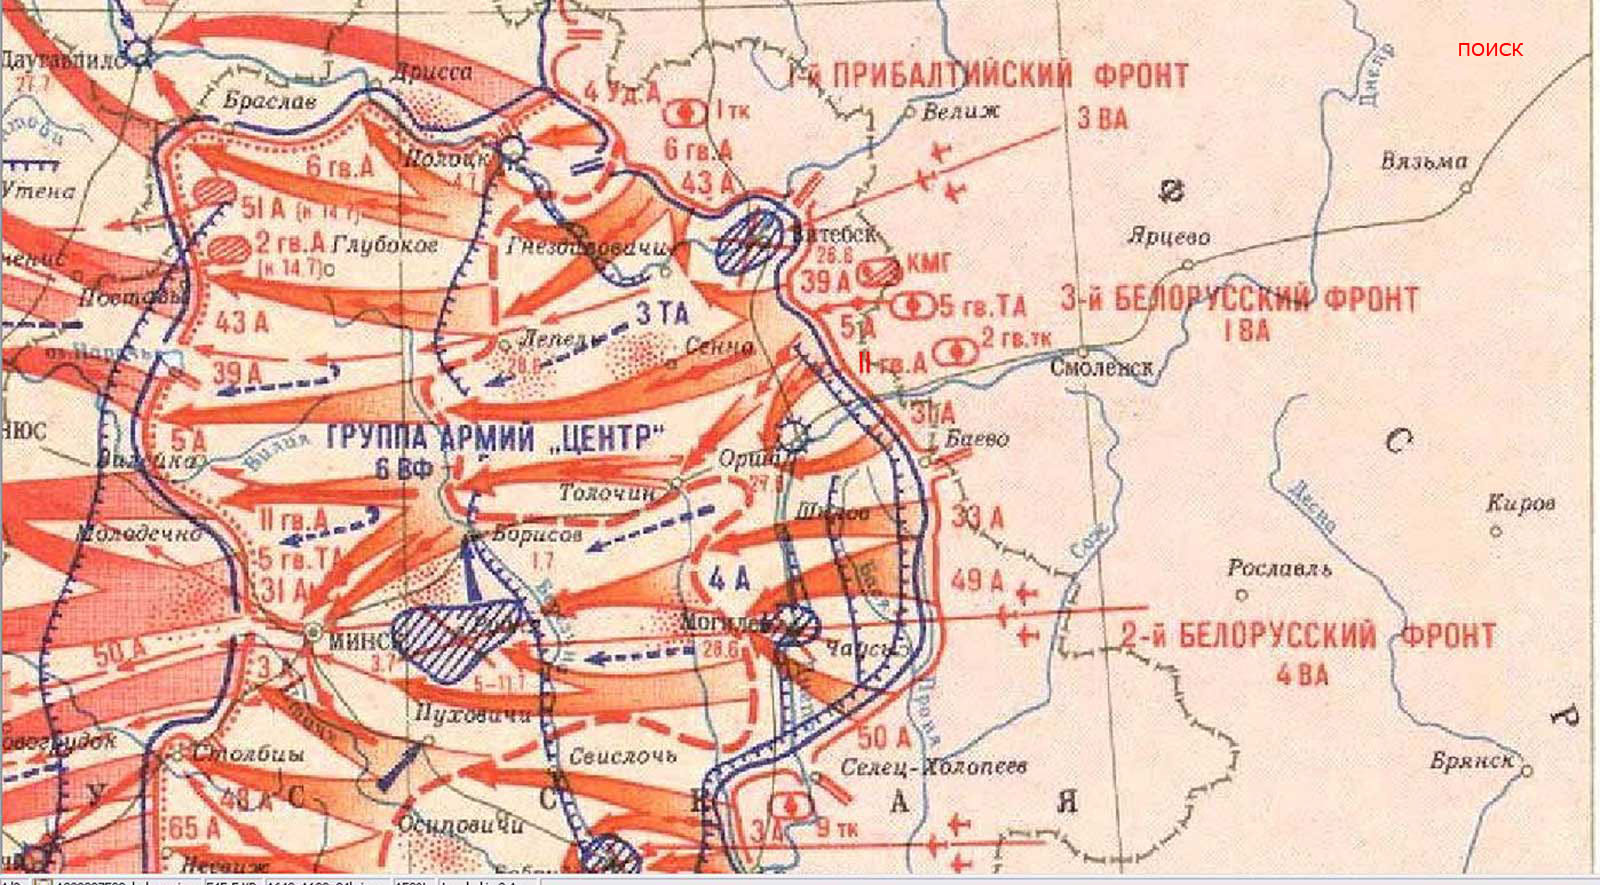 Операция багратион схема. Белорусская операция («Багратион») операция карта. Белорусская операция 1944 фронты. Операция Багратион 1 белорусский фронт. Карта освобождения Белоруссии в 1944 году.